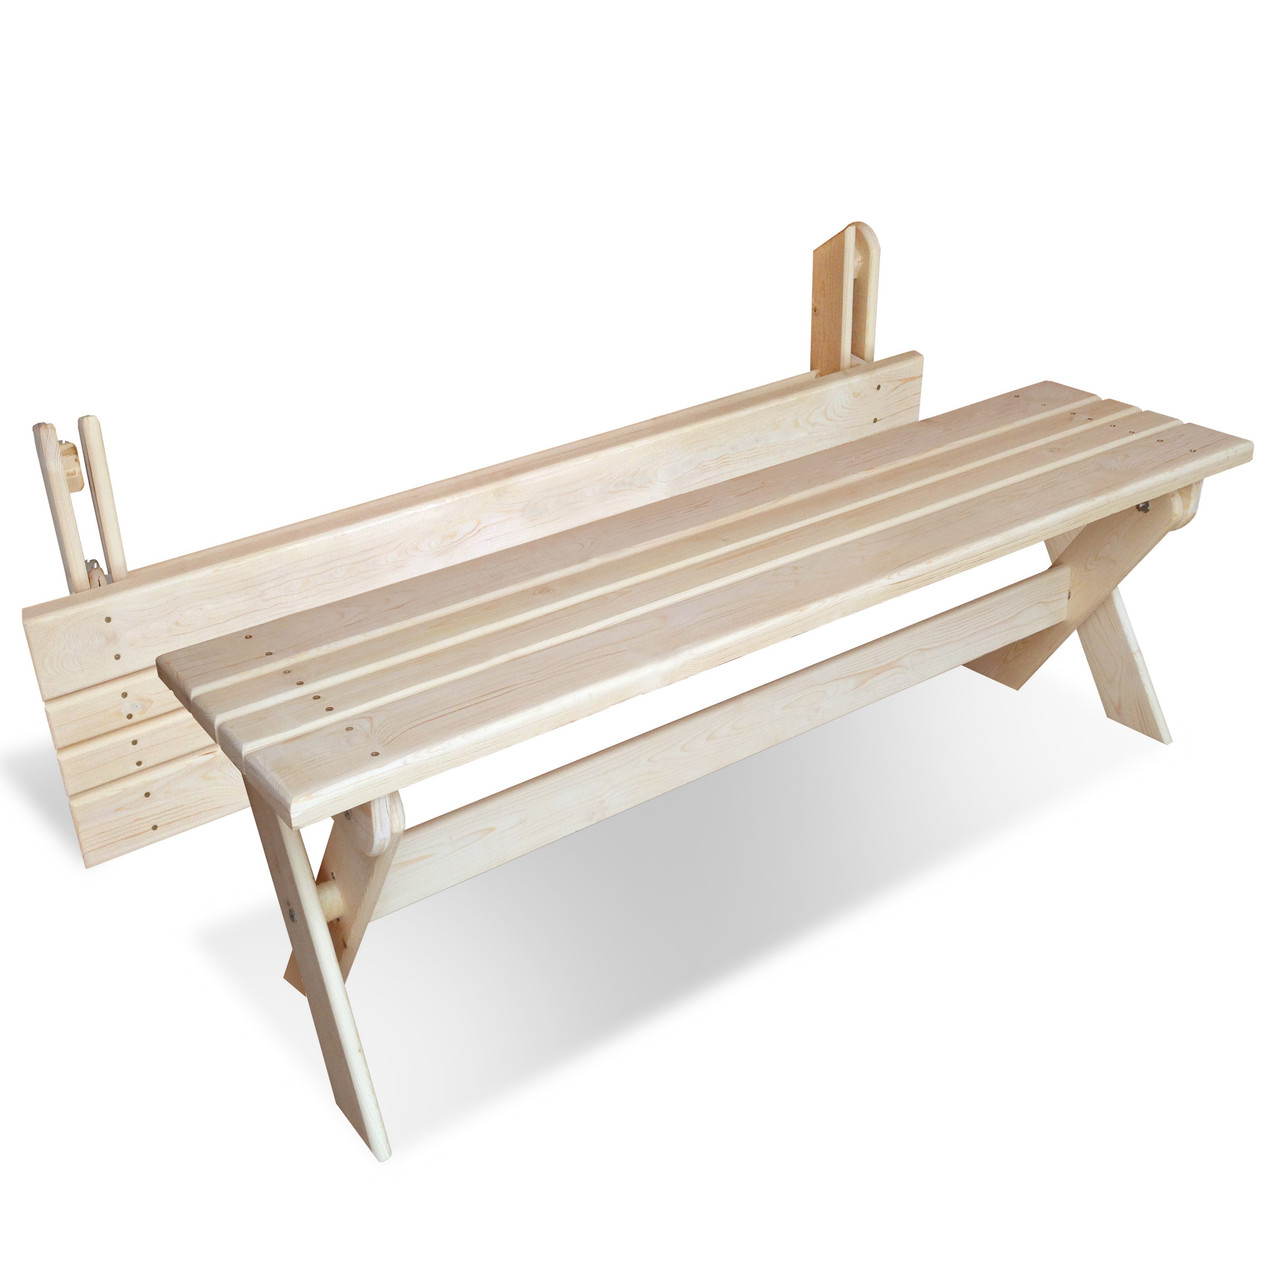 Купить деревянные складные скамейки в СПб от производителя